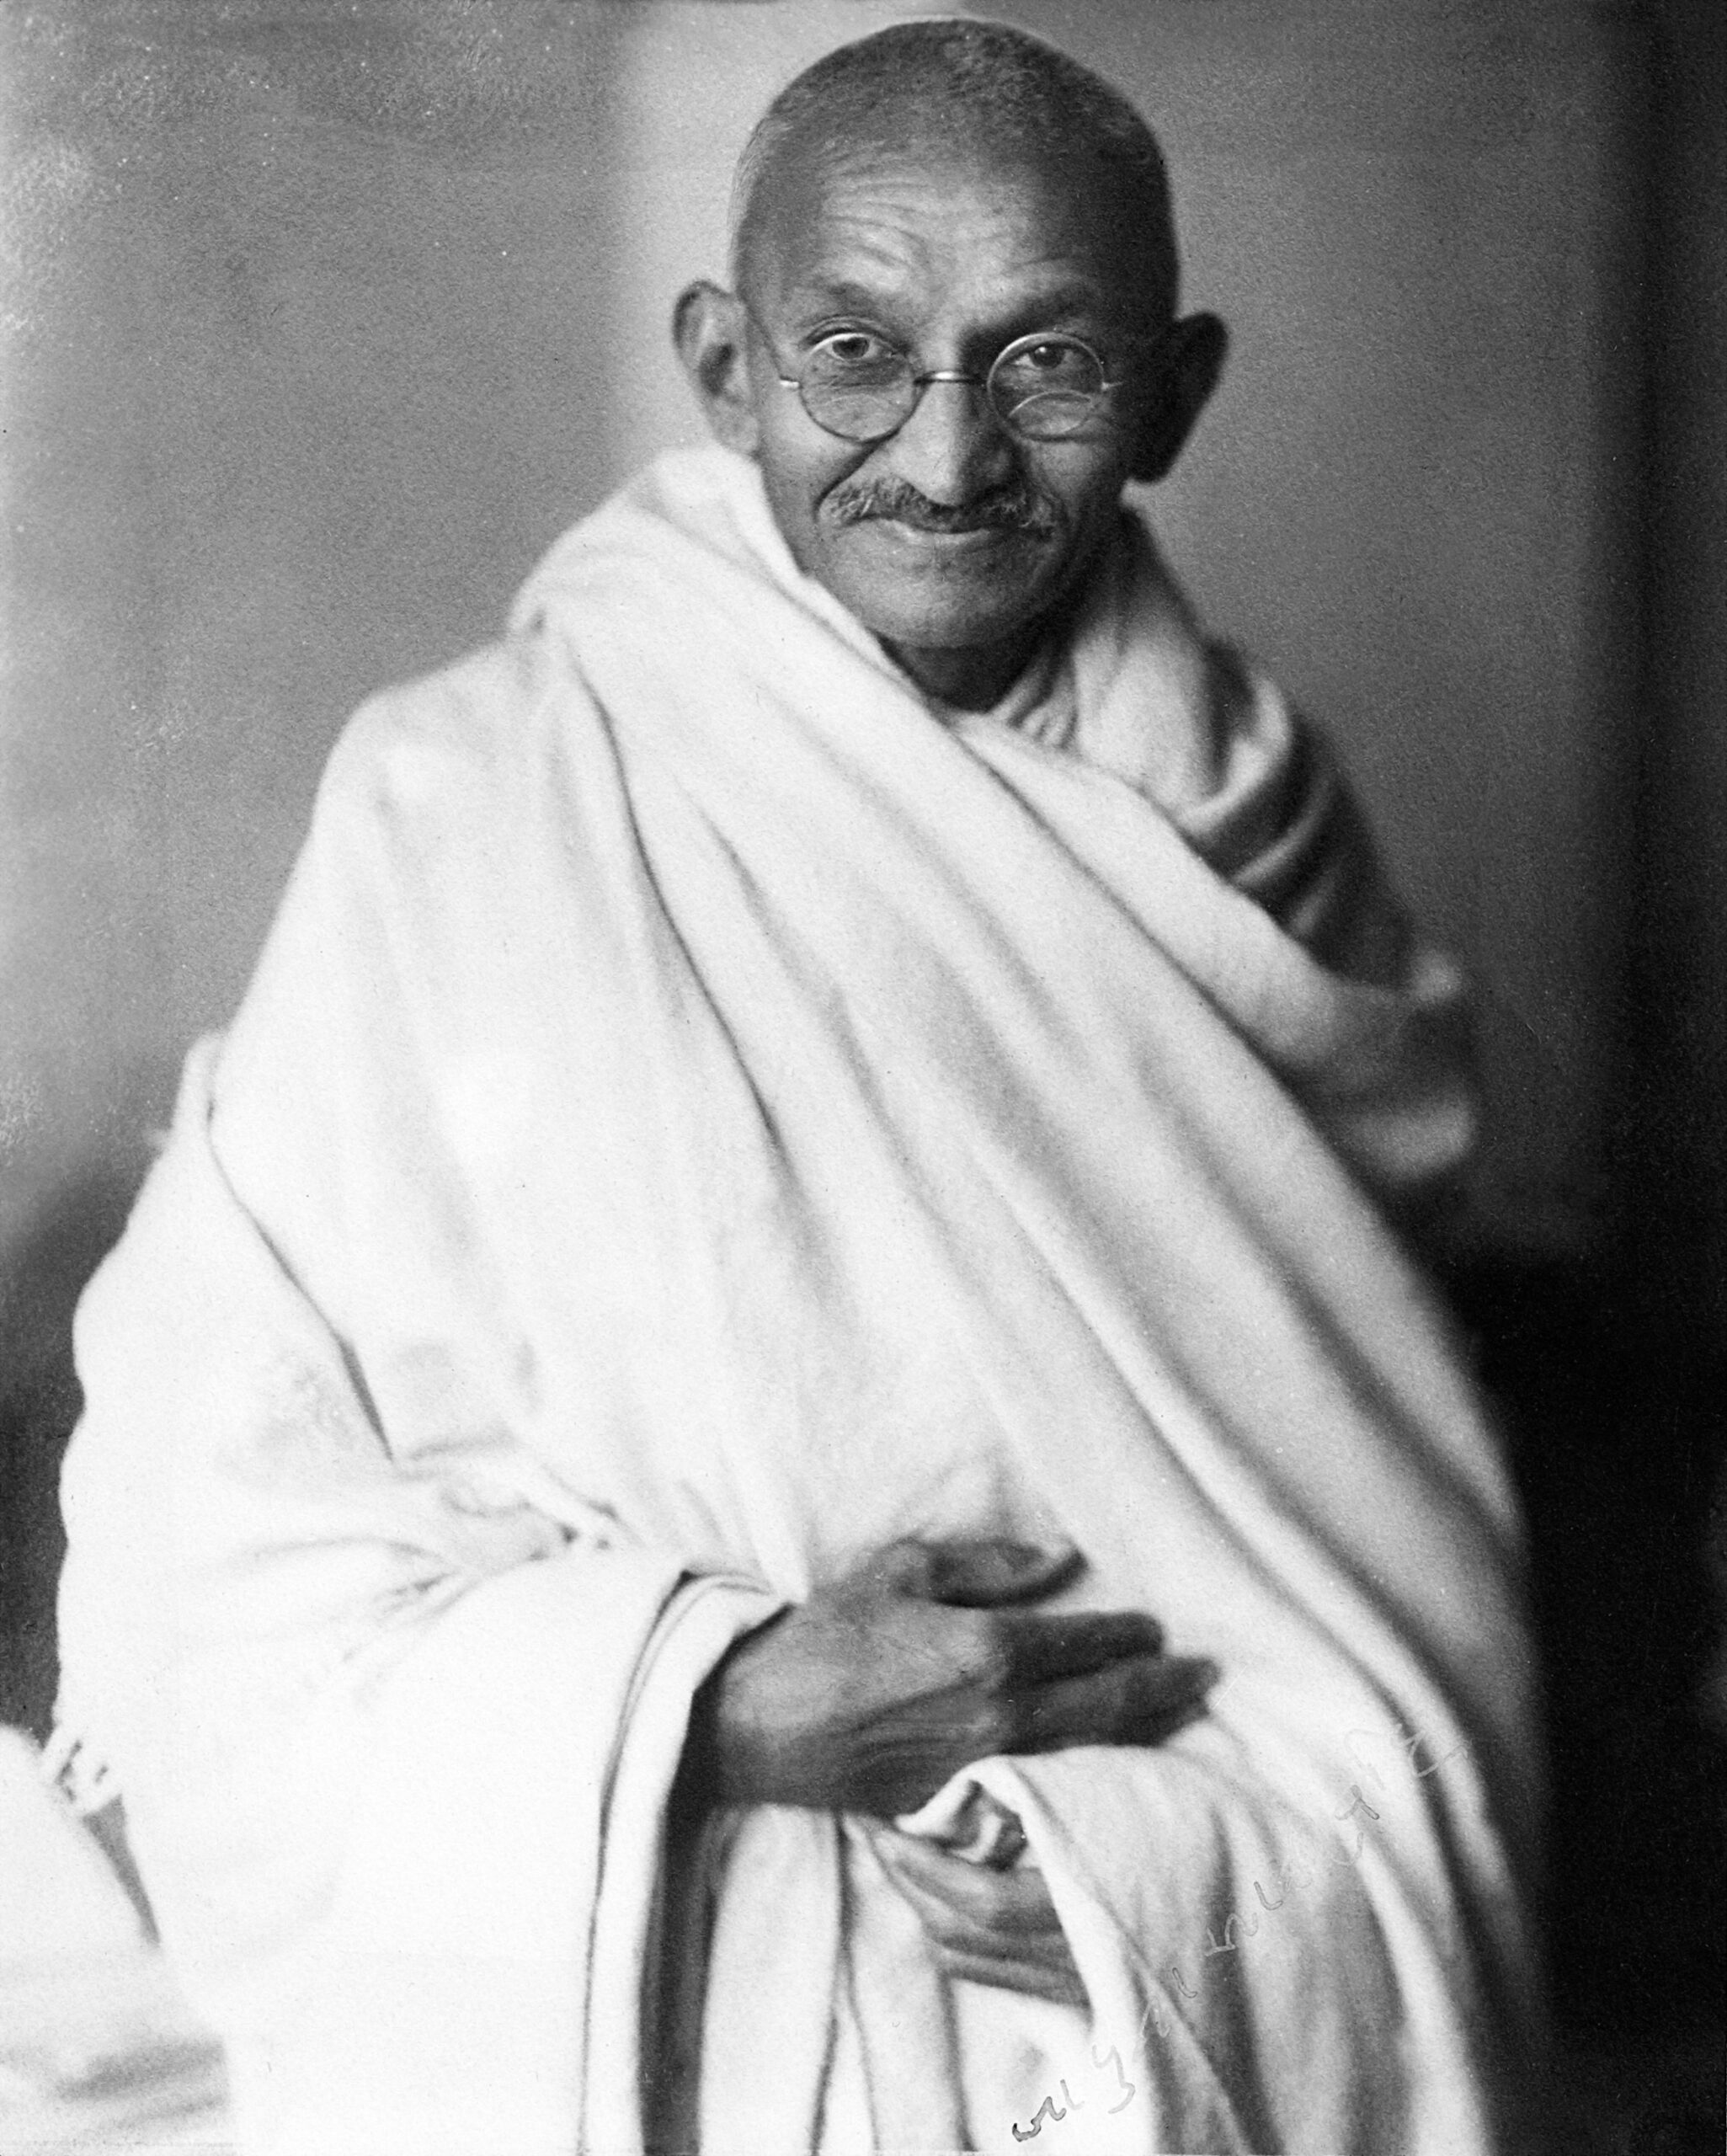 आत्मसात करने योग्य है महात्मा गांधी के विचार